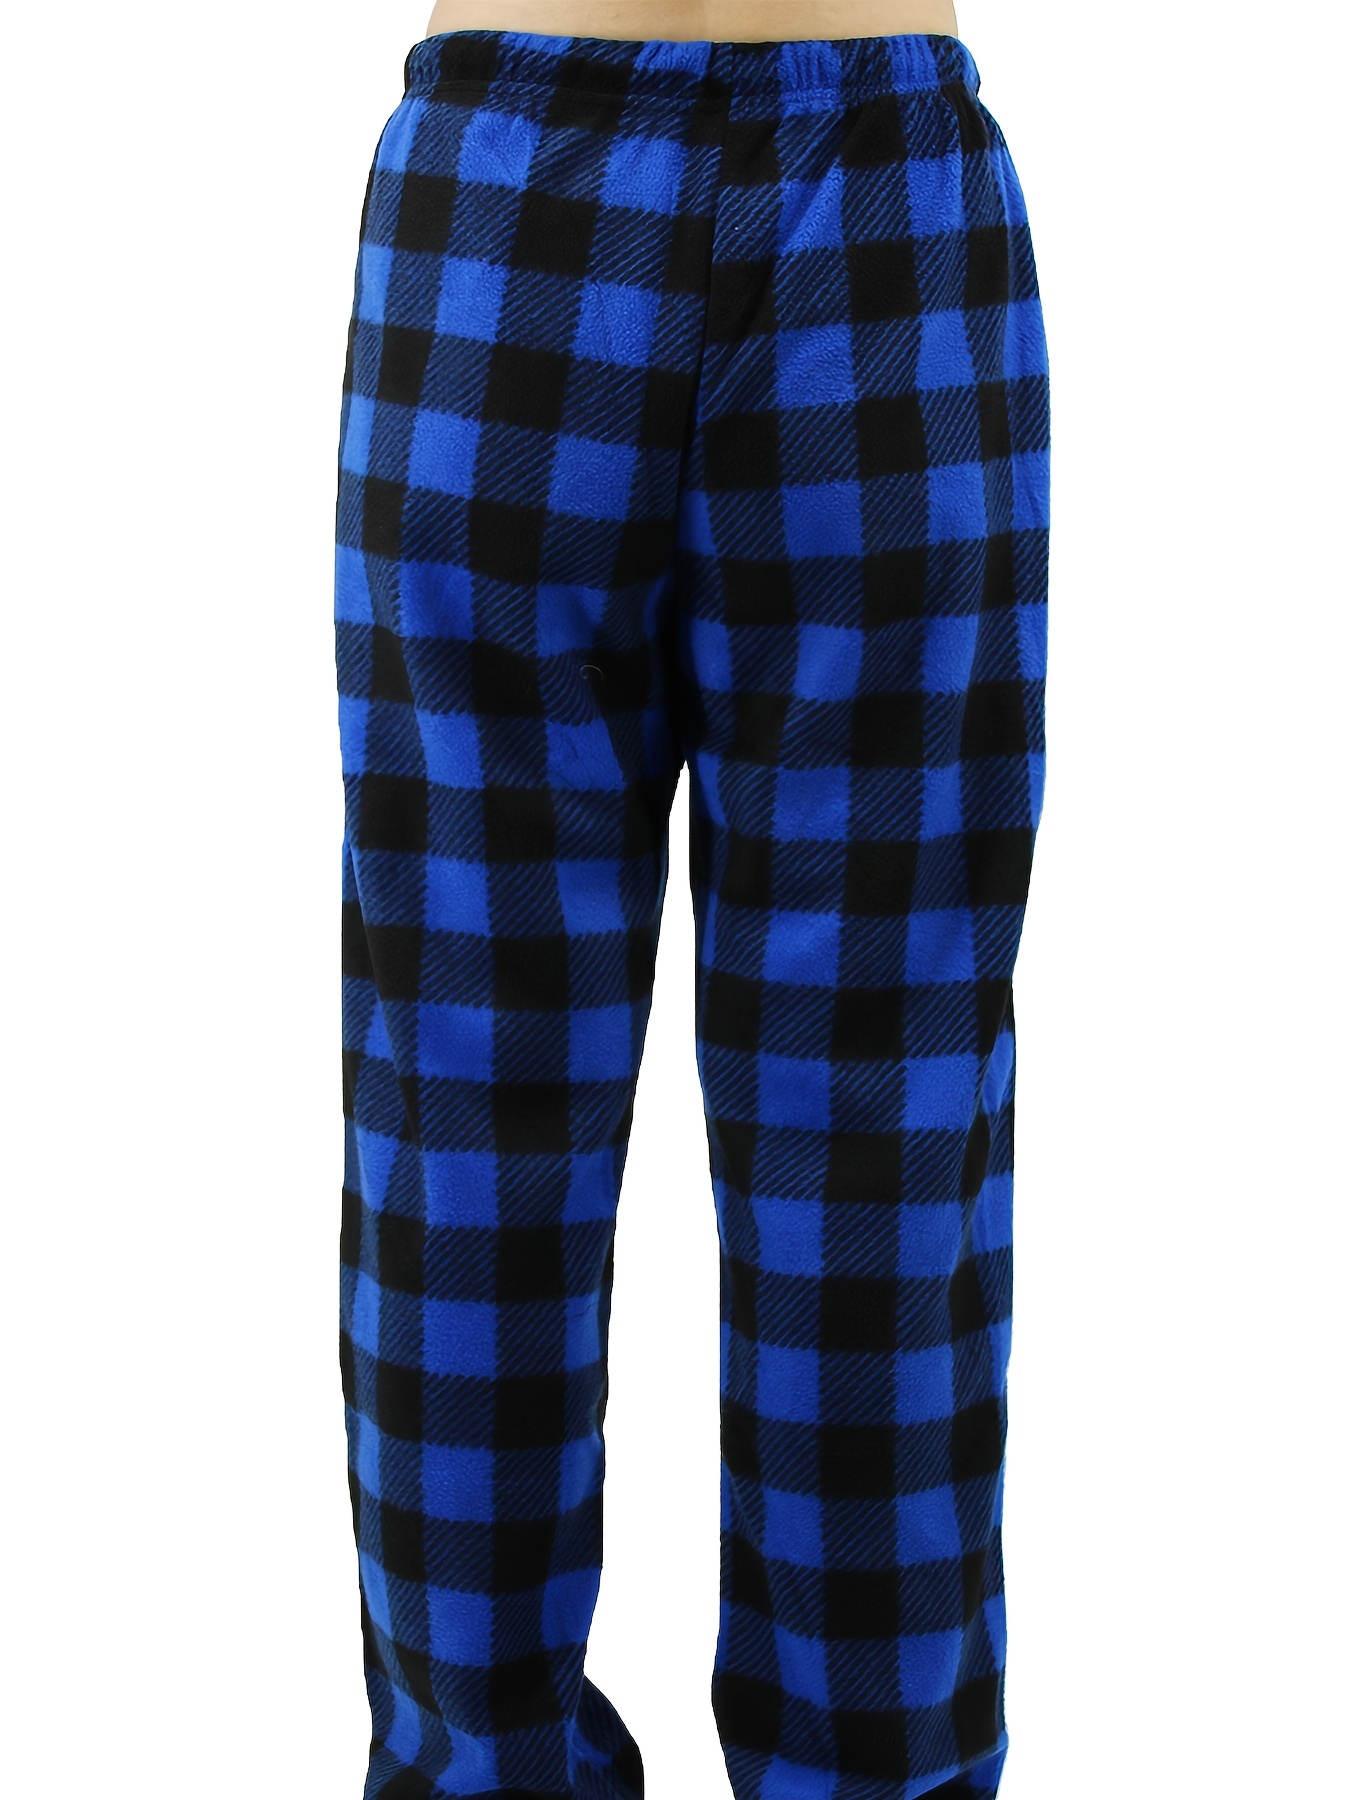 Pants and Pajamas